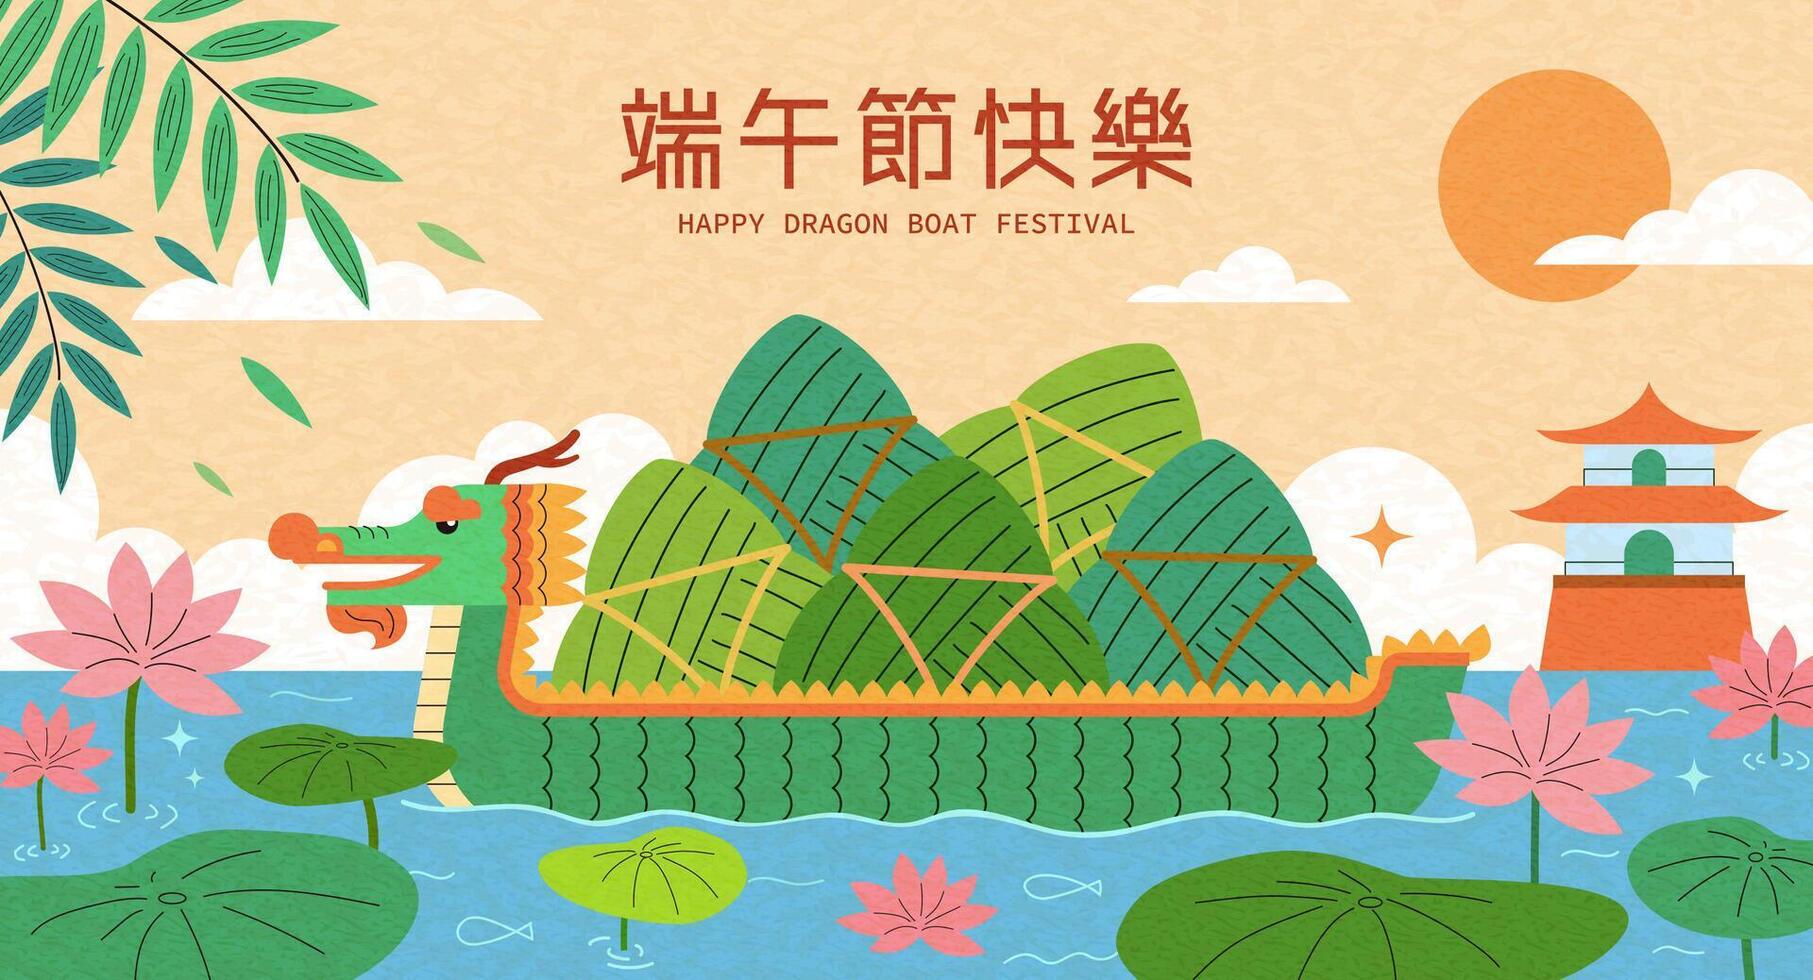 kreativ Drachen Boot Festival Poster. illustriert Drachen Boot voll von Zongzi im Fluss geschmückt mit Lotus Blumen und Blätter. Text, glücklich duanwu Urlaub. vektor